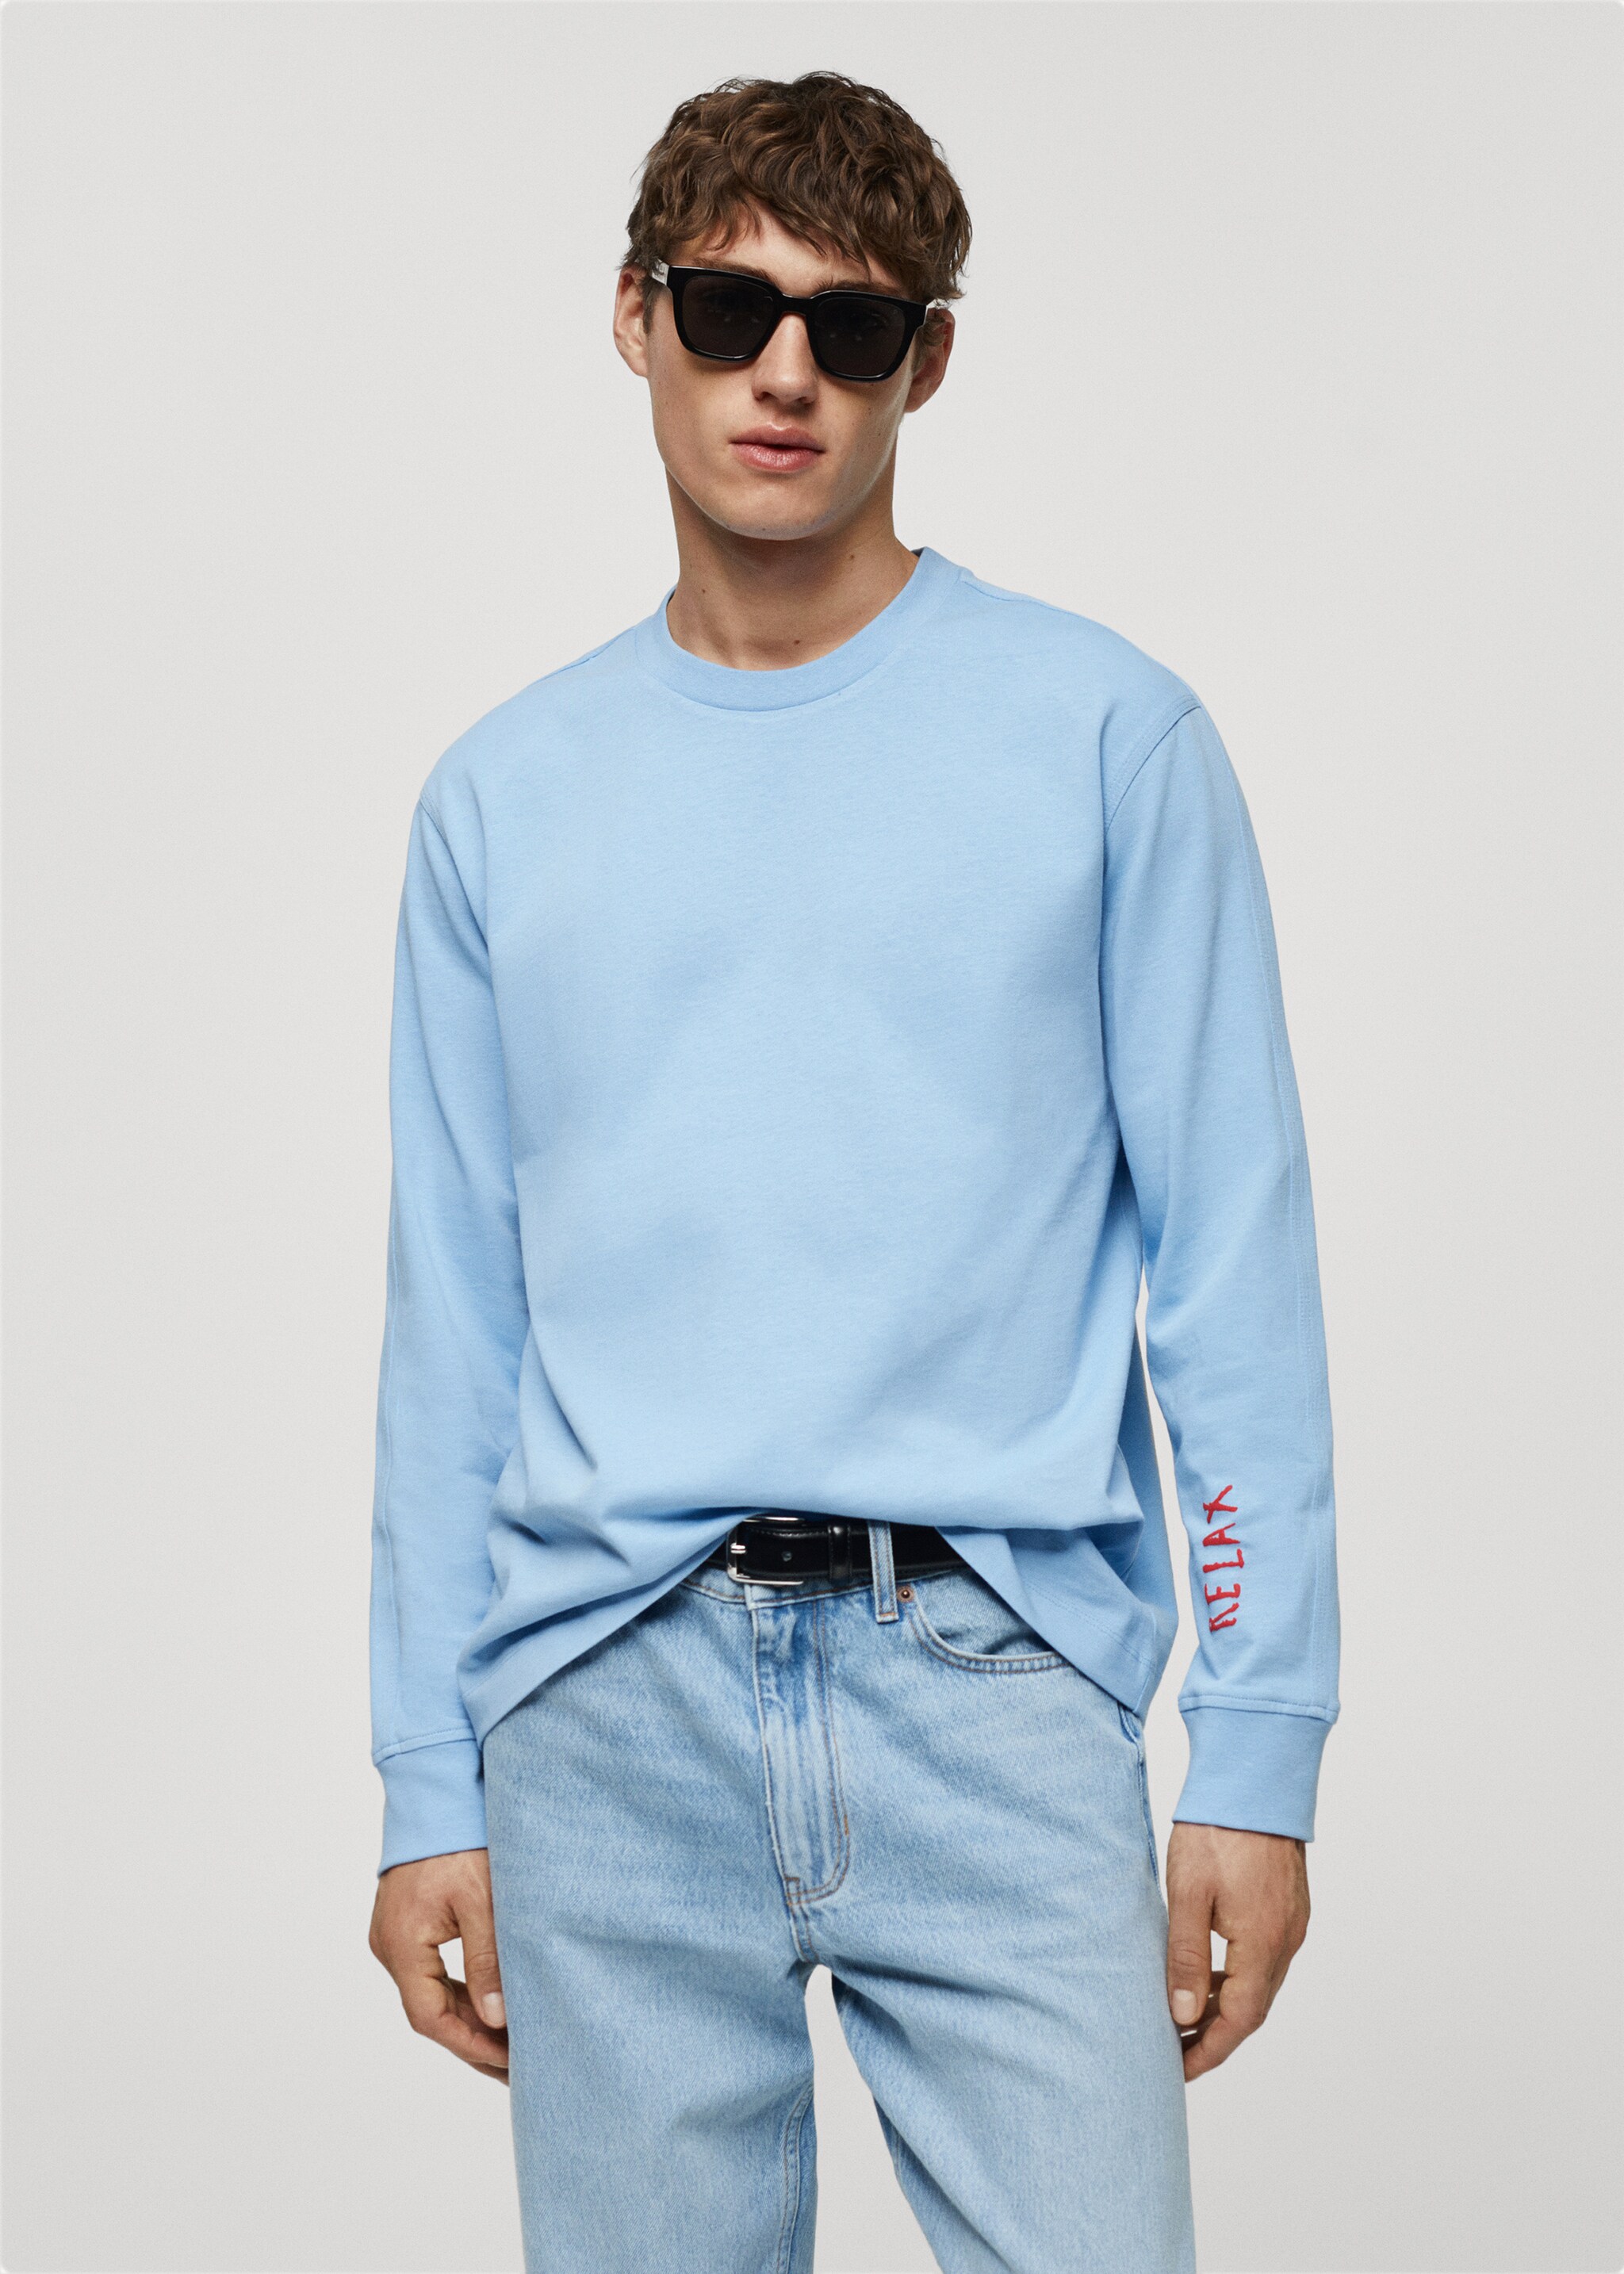 Sweatshirt aus 100 % Baumwolle mit aufgedruckter Zeichnung - Mittlere Ansicht